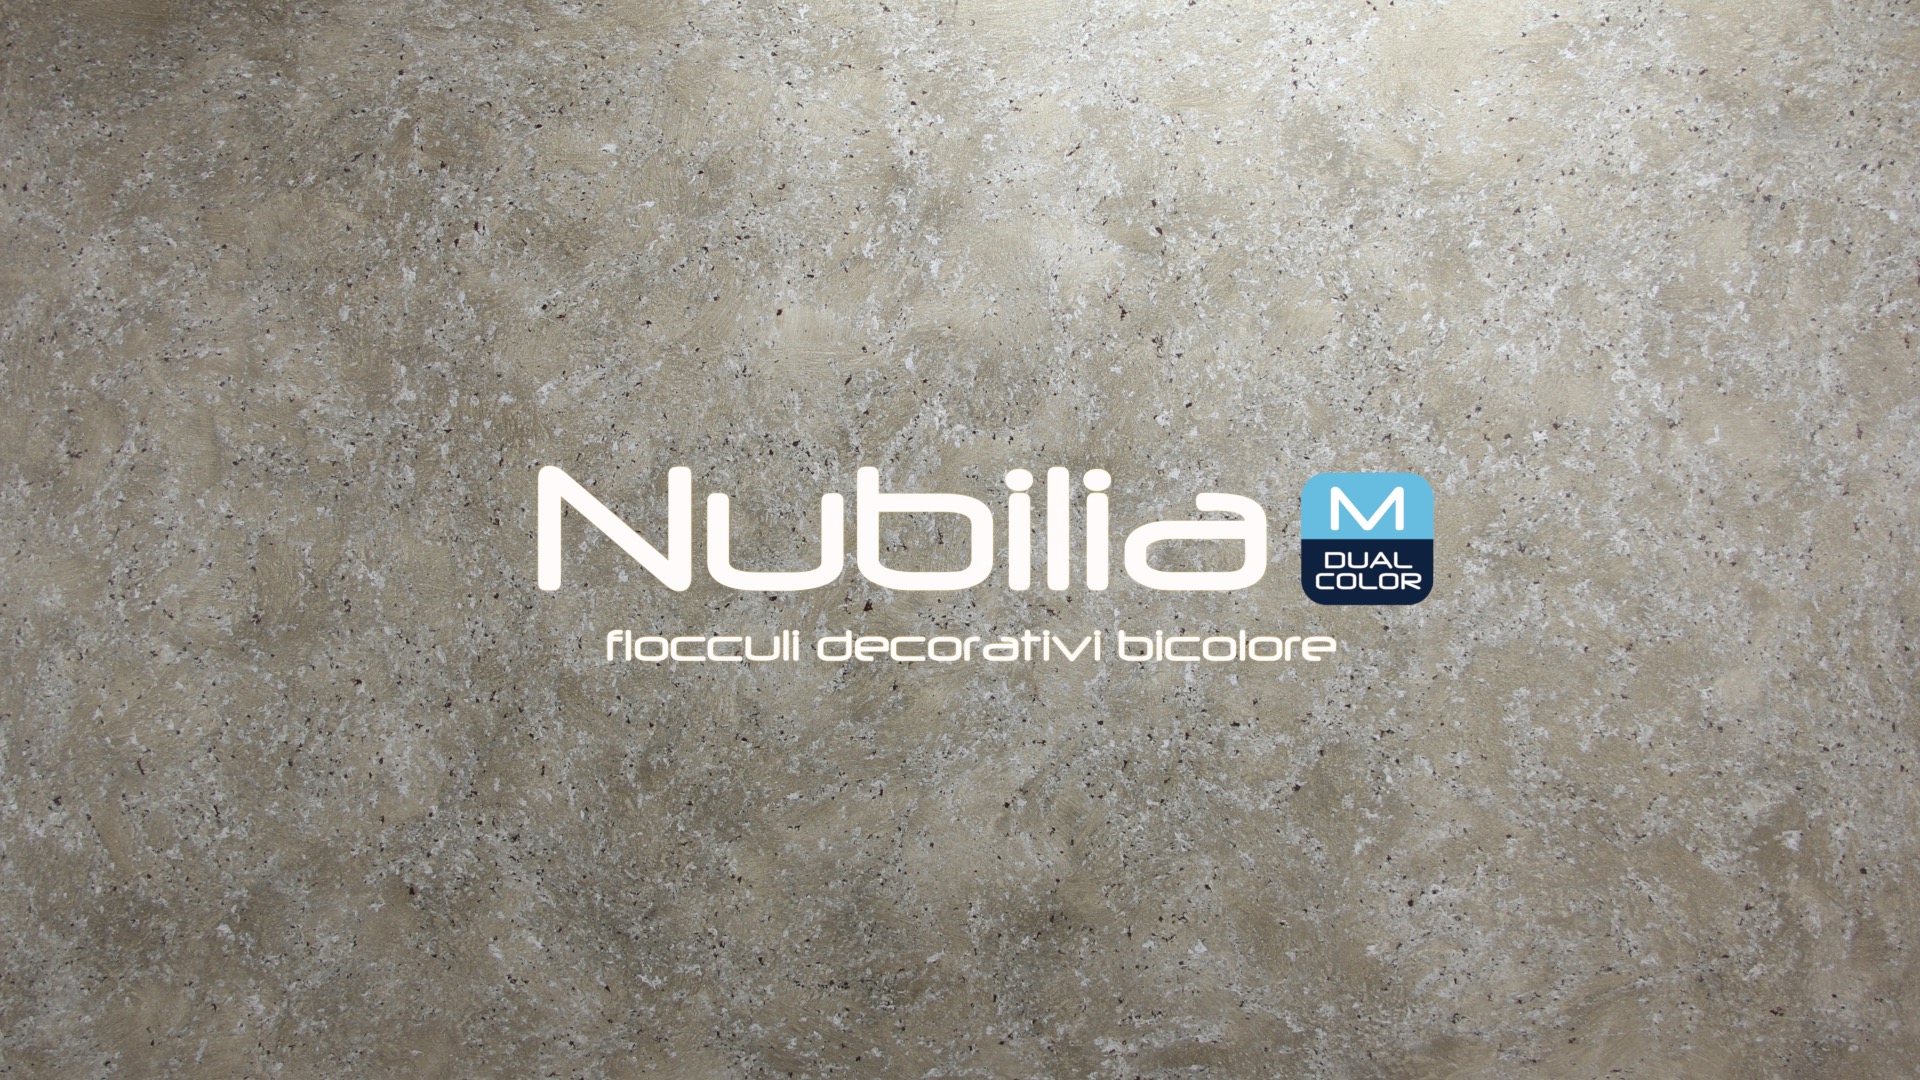 Nubilia_M_DC_Q3